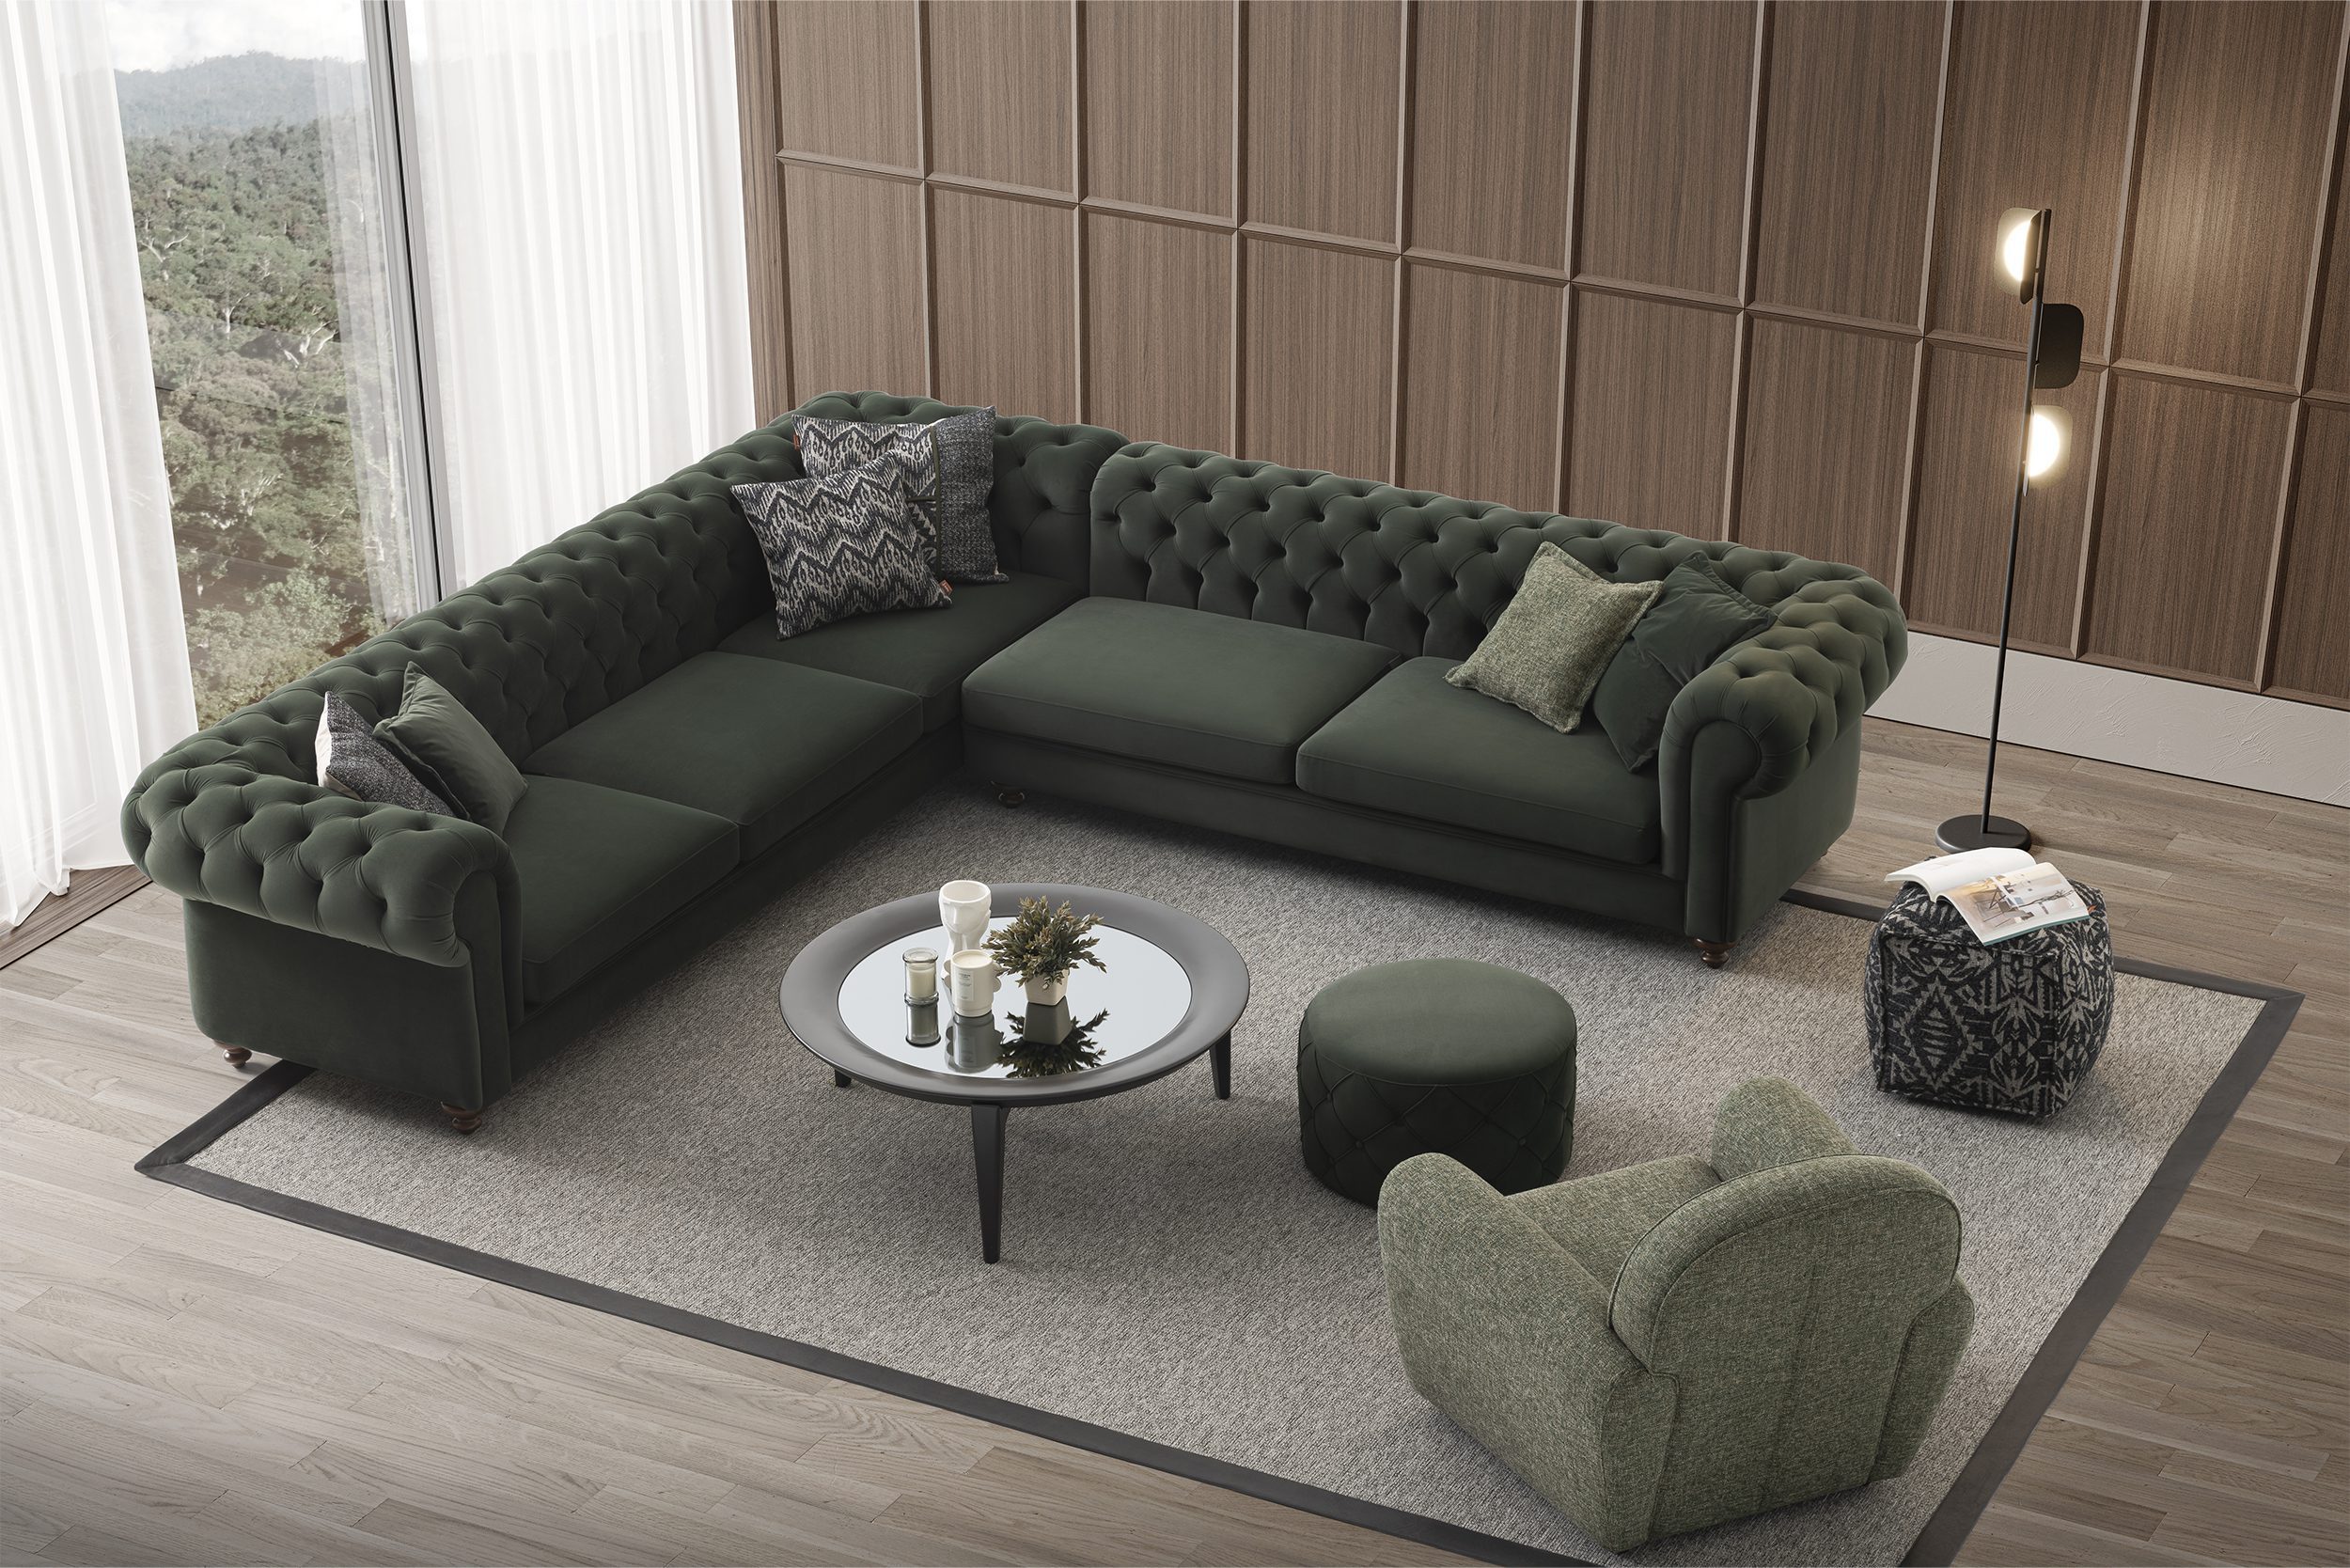 Aspendos Corner Sofa Set Featured